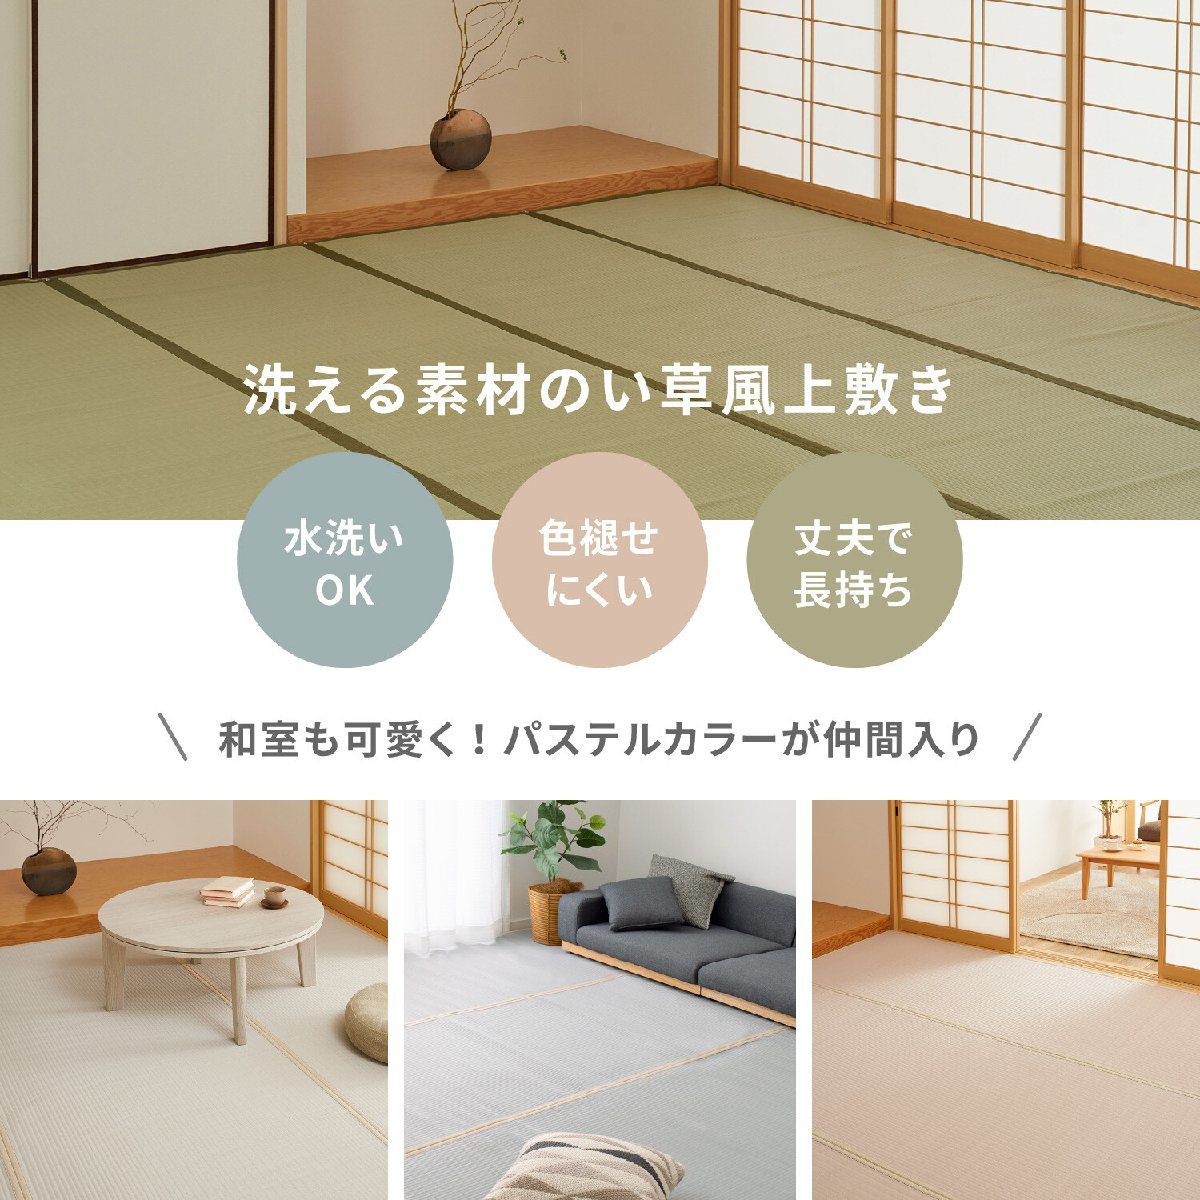 [... подлинный товар. ..]PP сверху кровать .. способ цветок .. промывание в воде OK [ 4 статья (....)] зеленый Edoma 3 татами (... коврик татами способ японский стиль мир вкус )